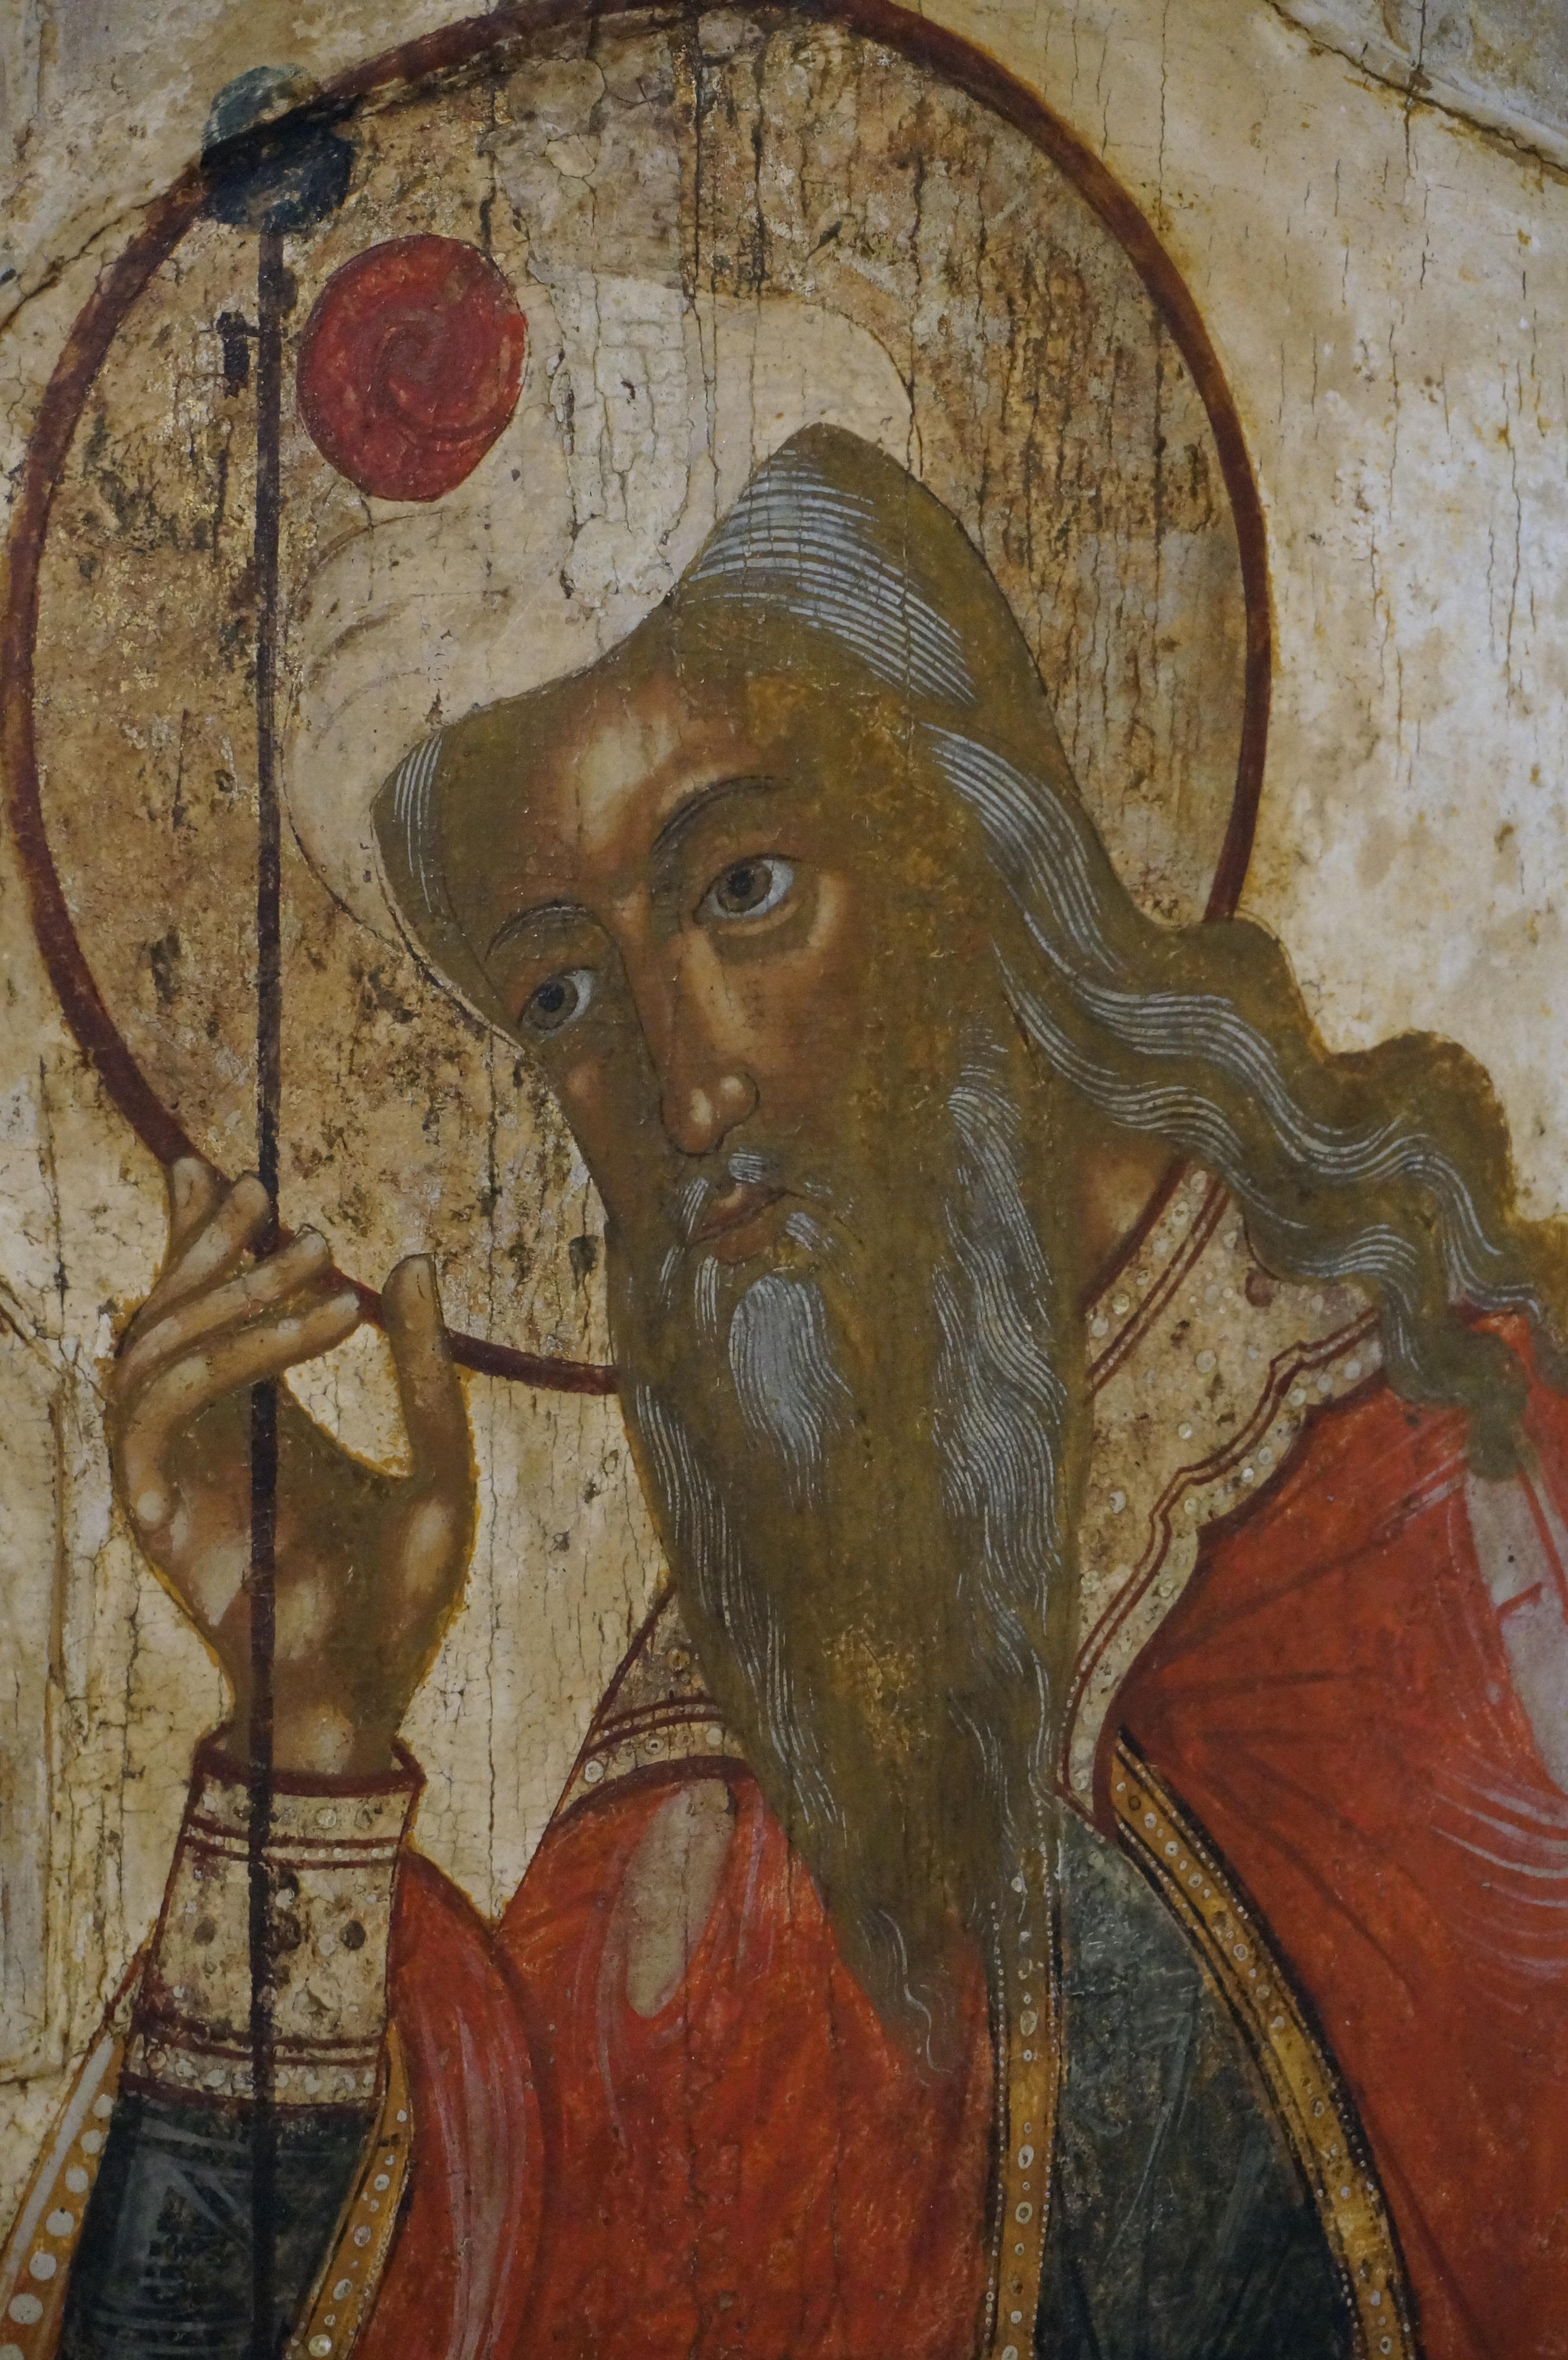 Icône russe provenant d'une iconostase et représentant le prophète Aaron, seconde moitié du XVIIe siècle
Le prophète Aaron est ici représenté avec un rameau d'amandier.
Nous retrouvons ce symbole de la vie nouvelle dans le livre de Numeri 17, au